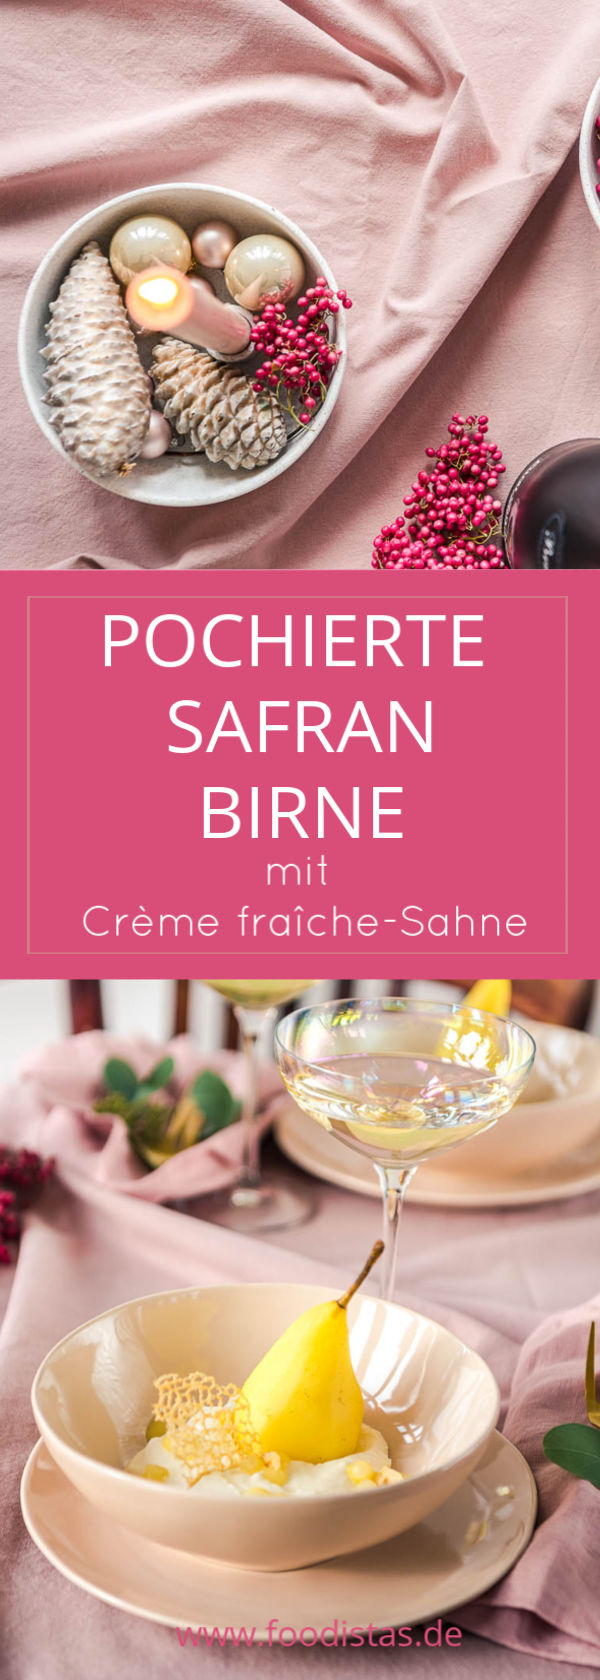 Pochierte Safran Birne mit Crème fraîche-Sahne, Weihnachtsdessert ...